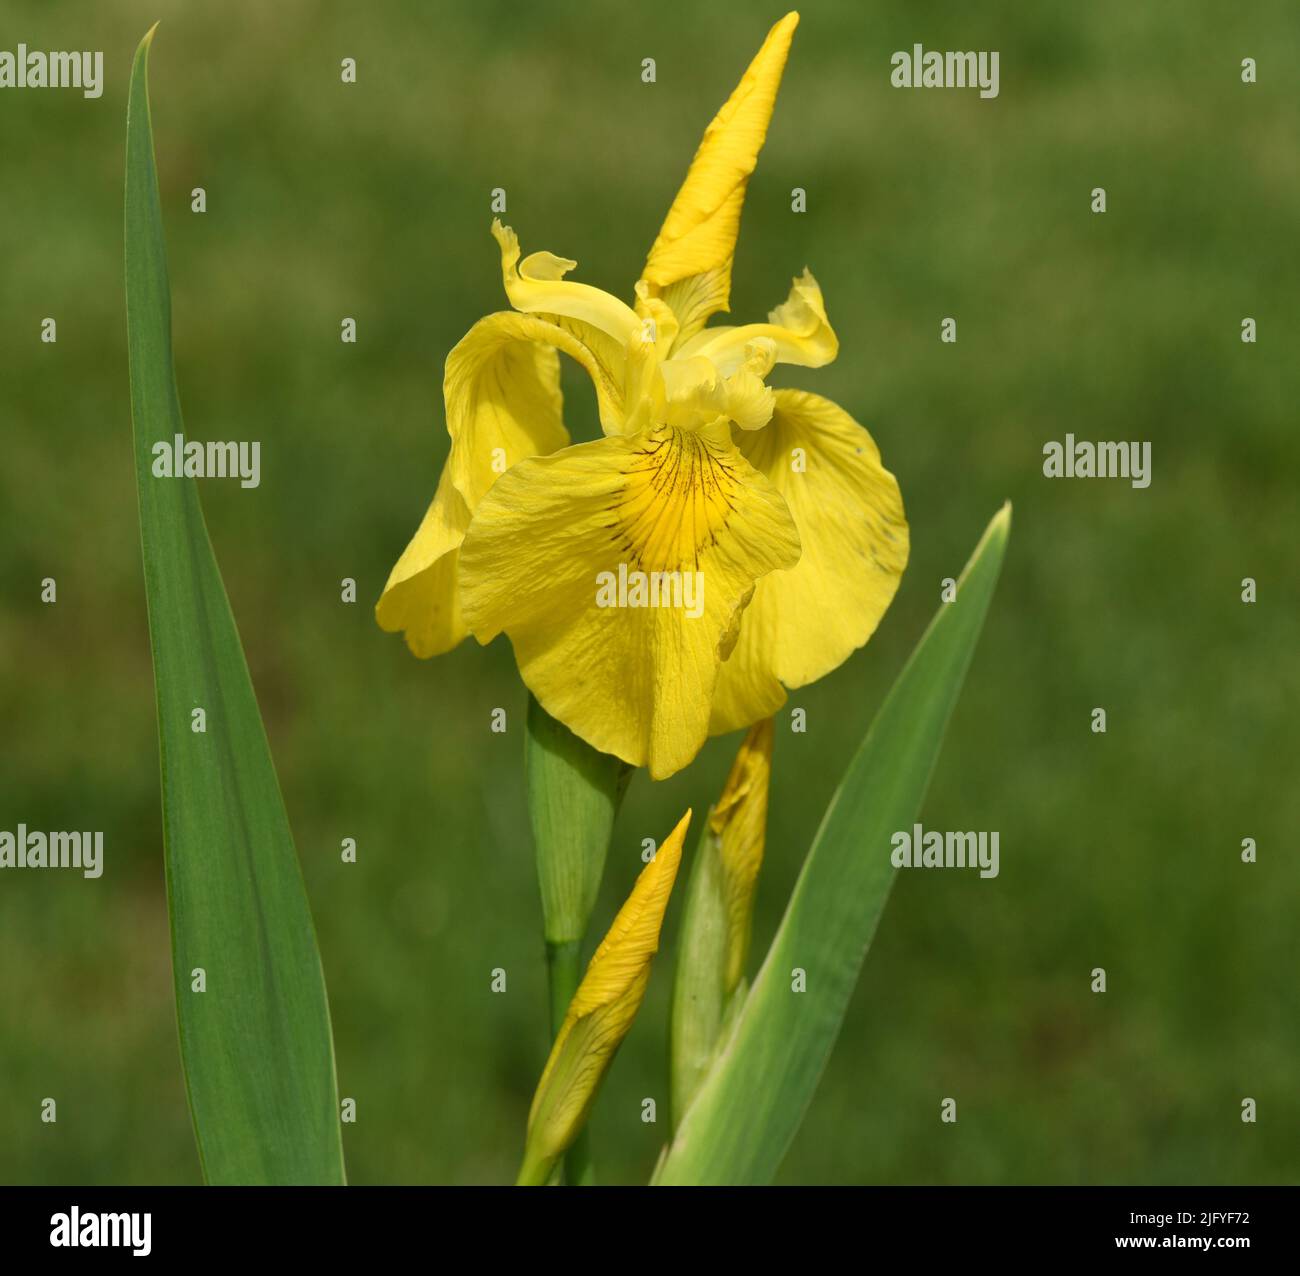 Sumpfschwertlilie, Iris pseudacorus ist eine Wasser- und Heilpföanze mit gelben Blueten. El iris Marsh, Iris pseudacorus, es una pla acuática y medicinal Foto de stock